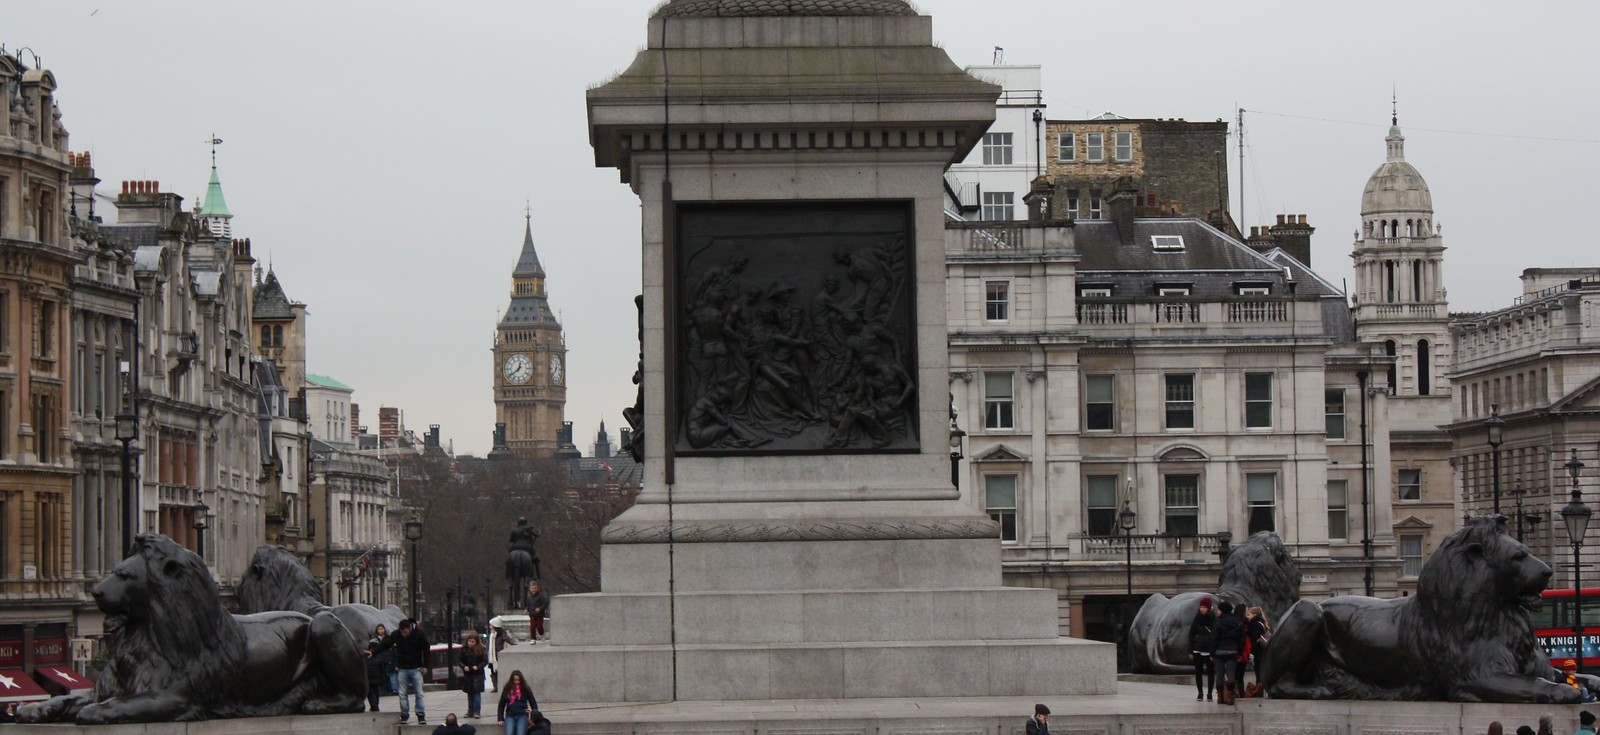 View of Big Ben Trafalgar Square London